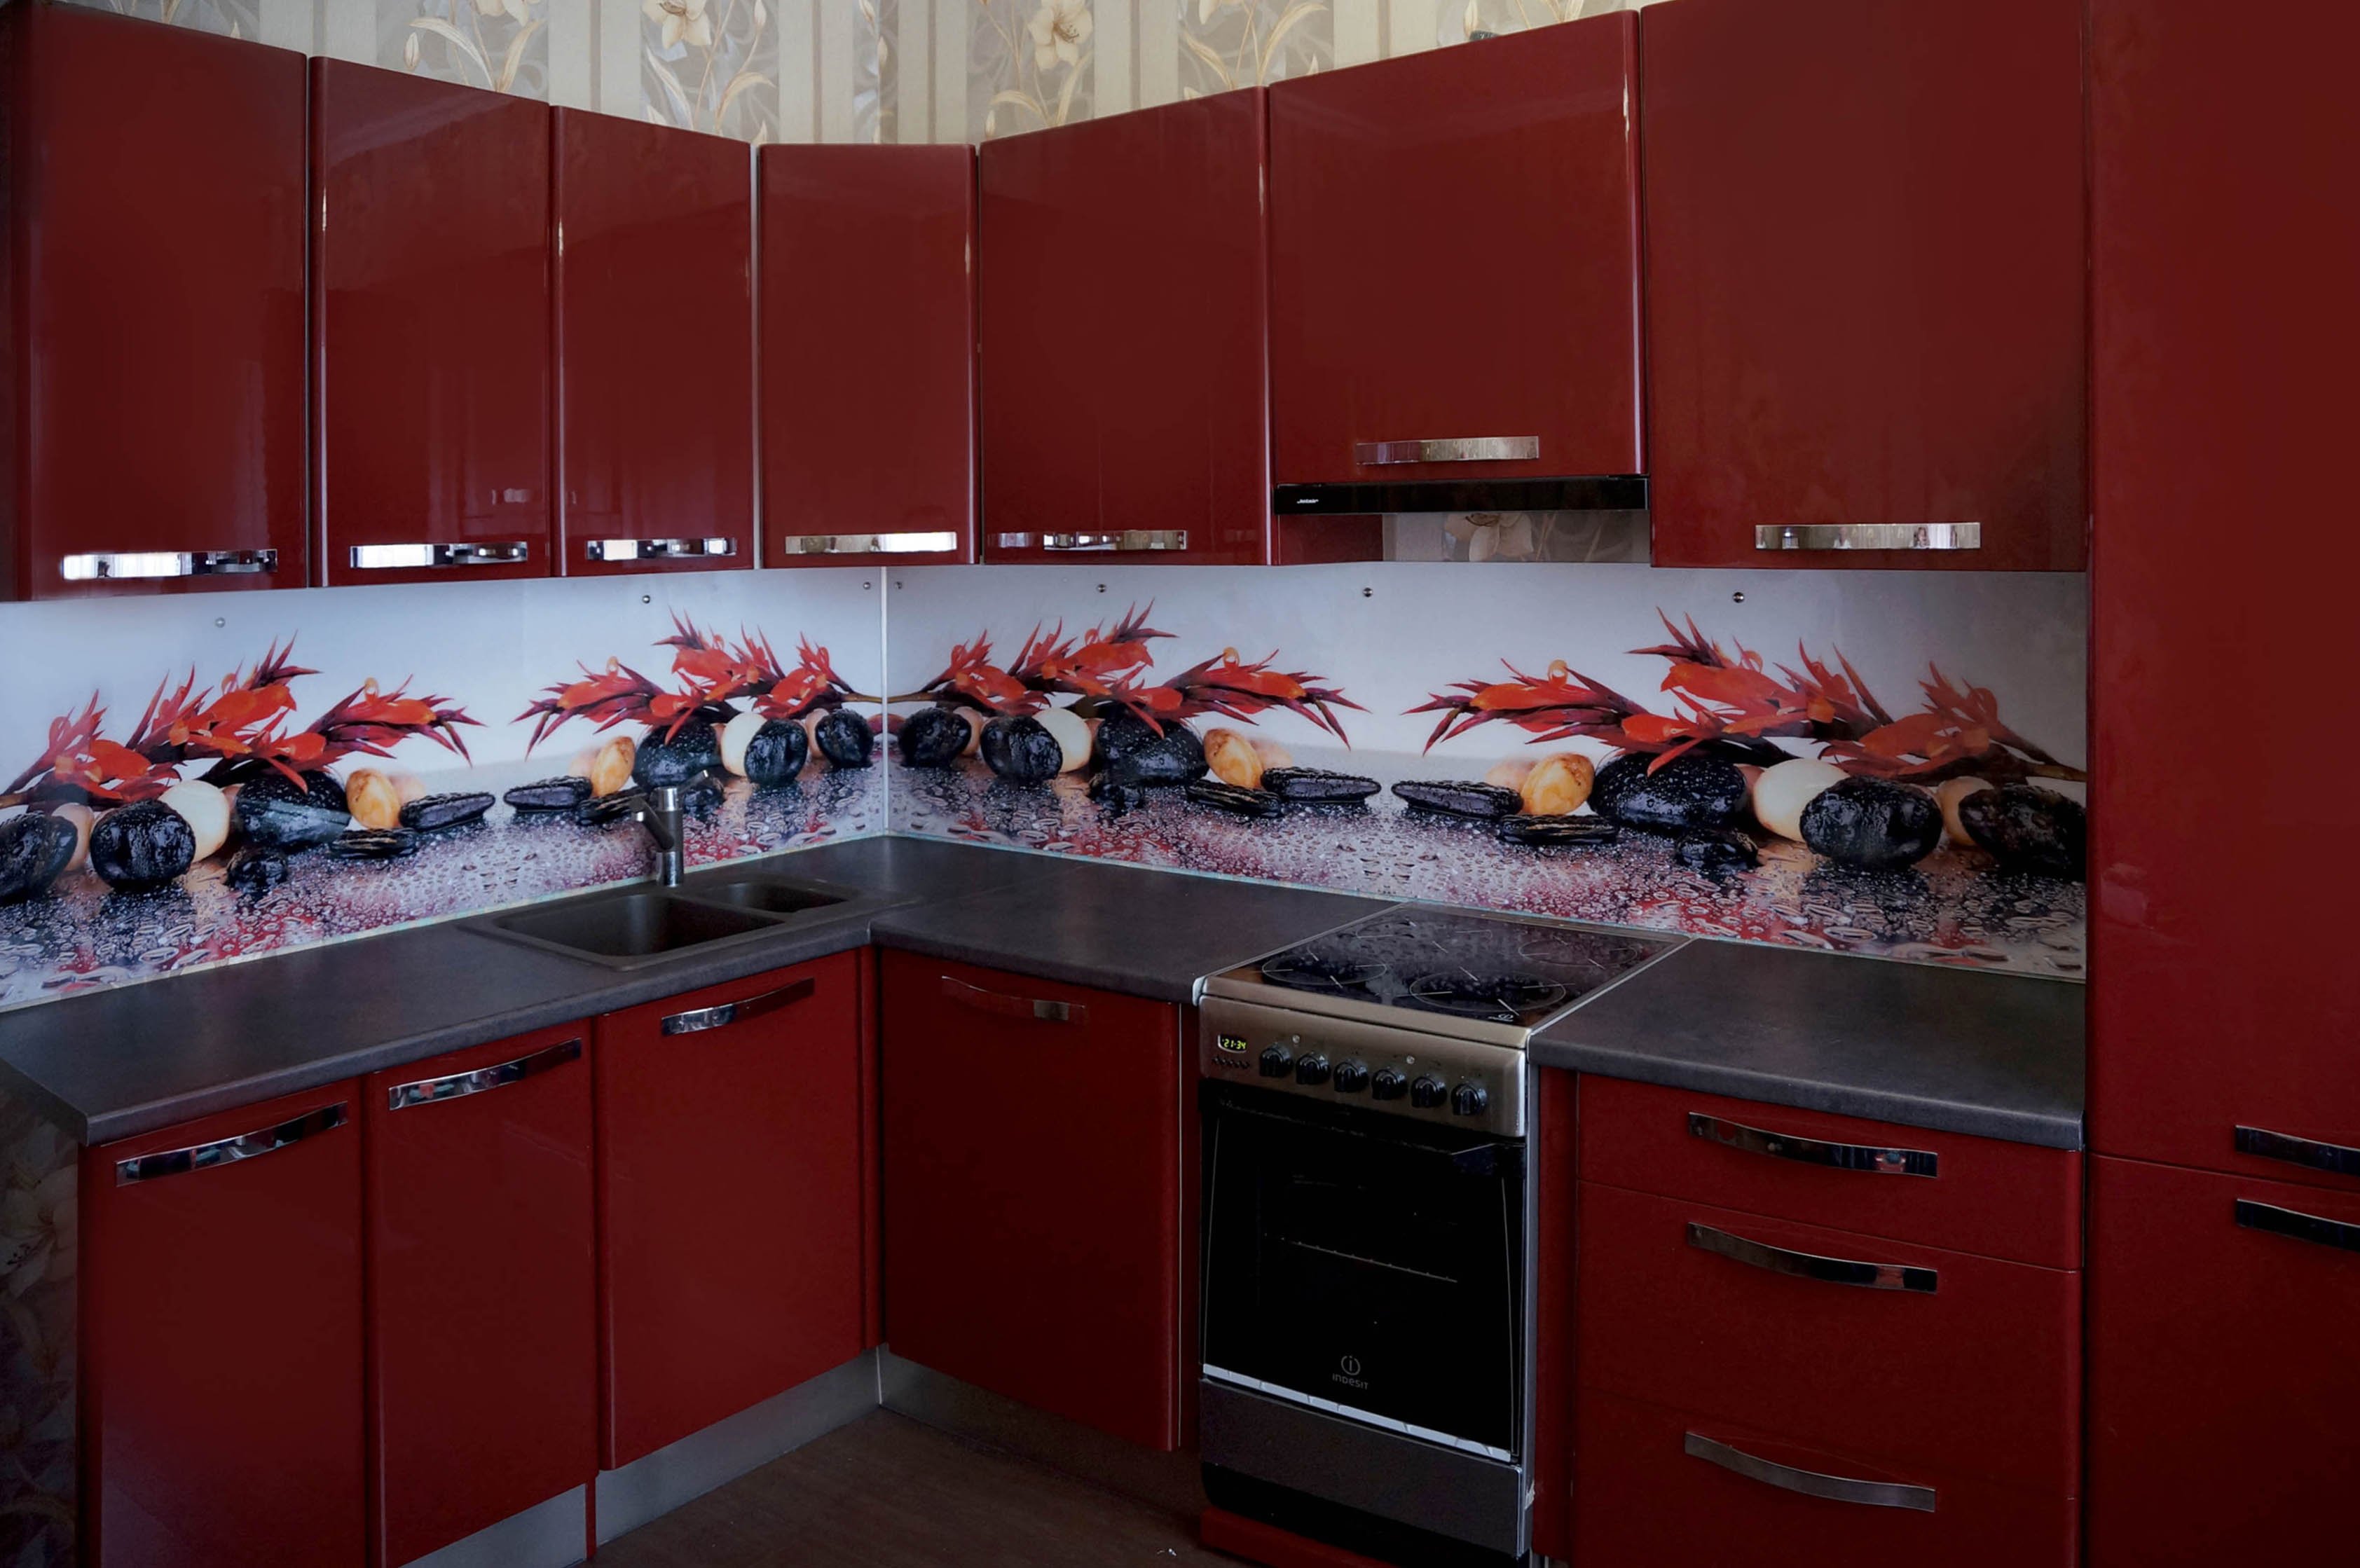 ПВХ кухонные фартуки красного цвета ассортимент